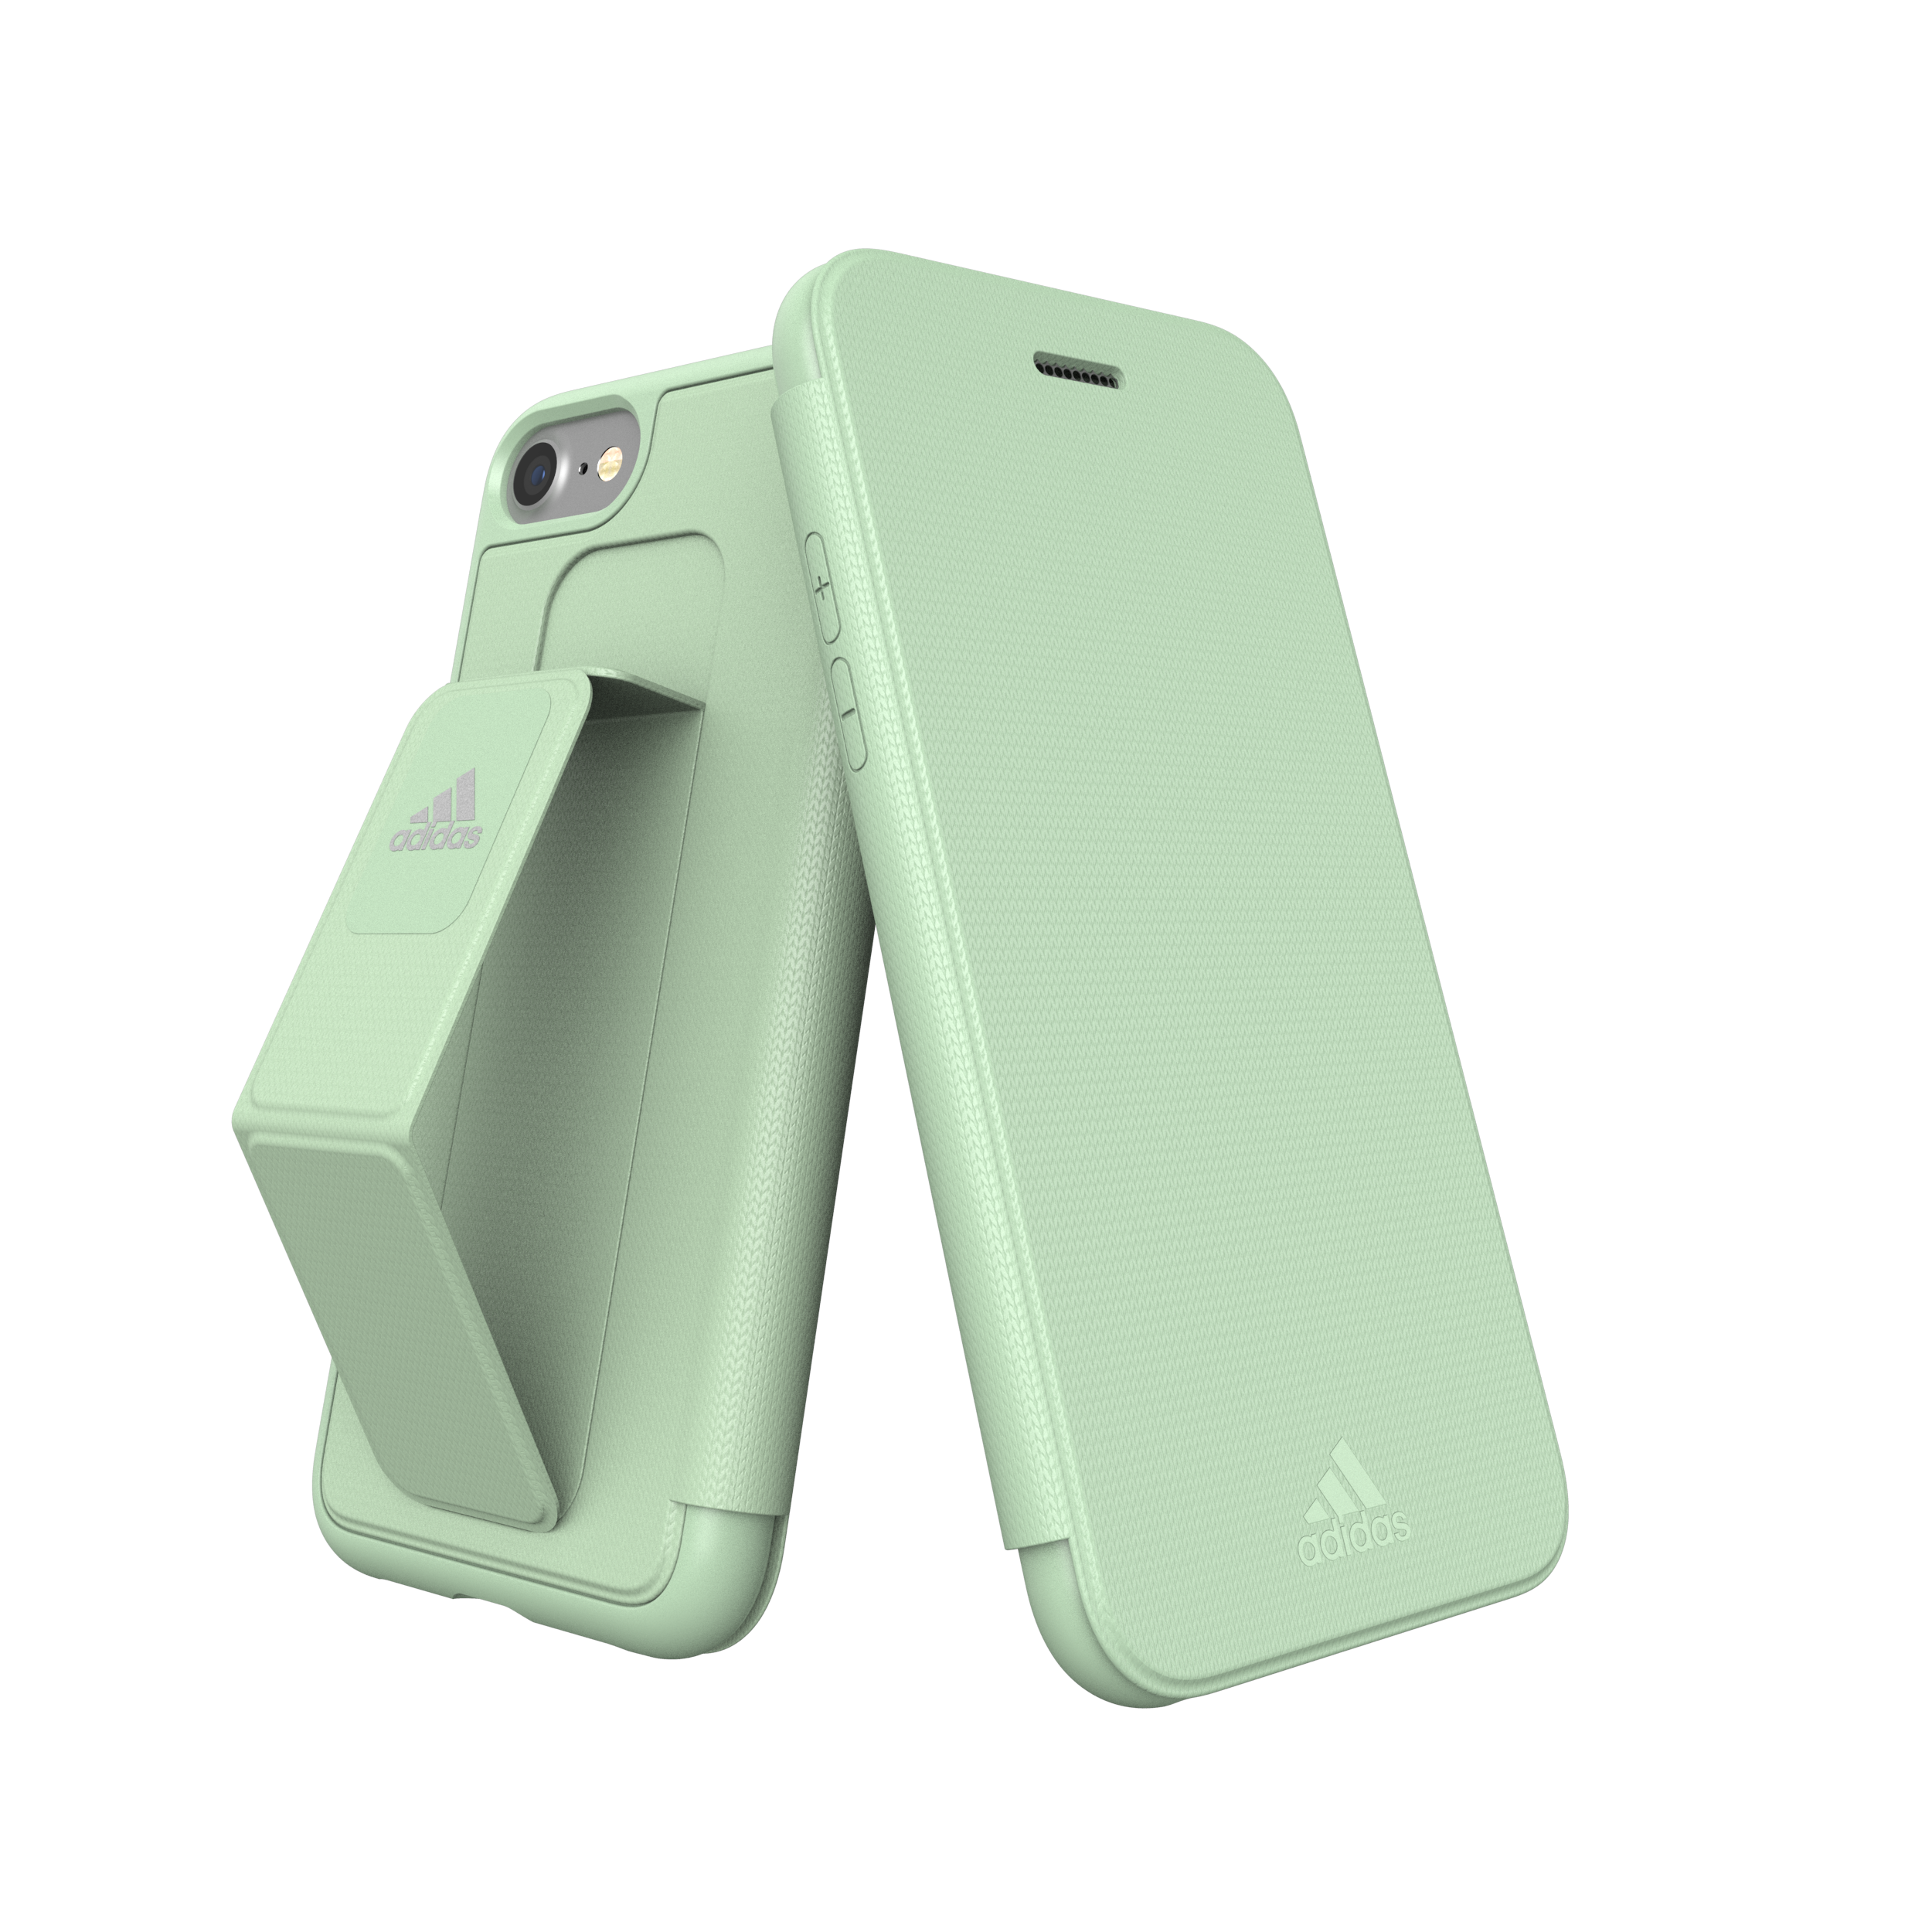 Buy | adidas-cases Green Case Folio Grip iPhone